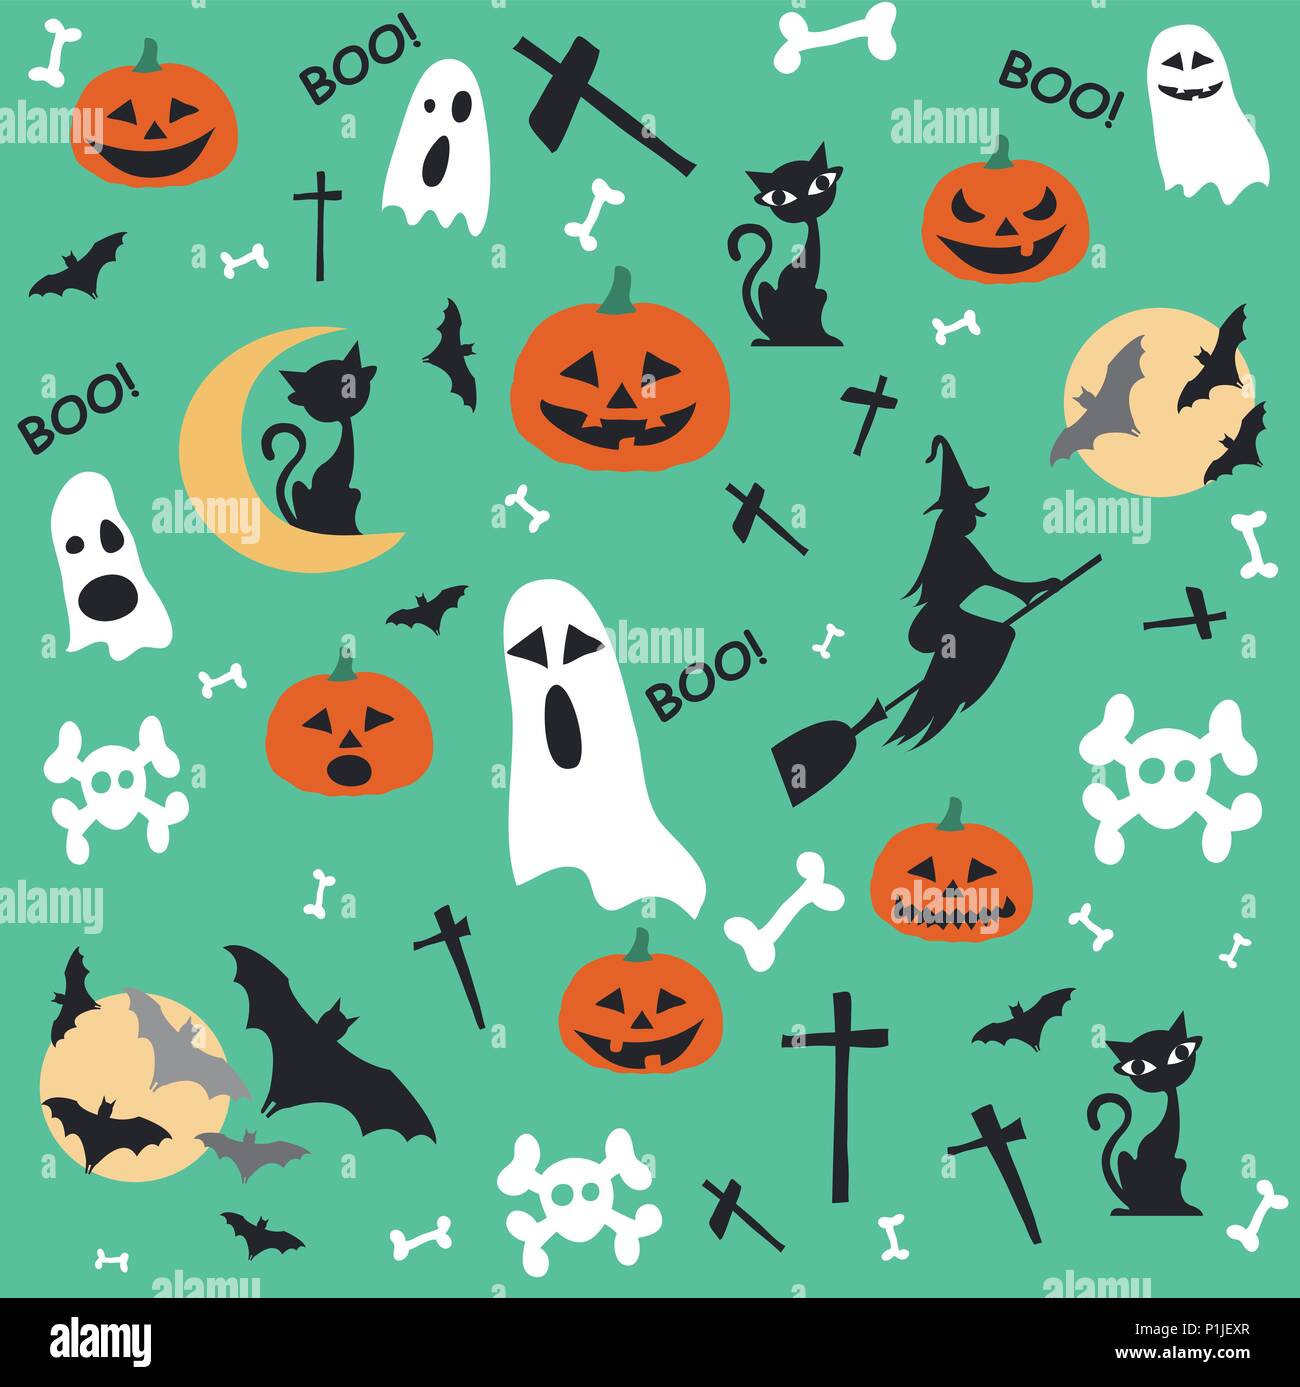 Halloween   Halloween wallpaper Halloween images Halloween wallpaper  iphone